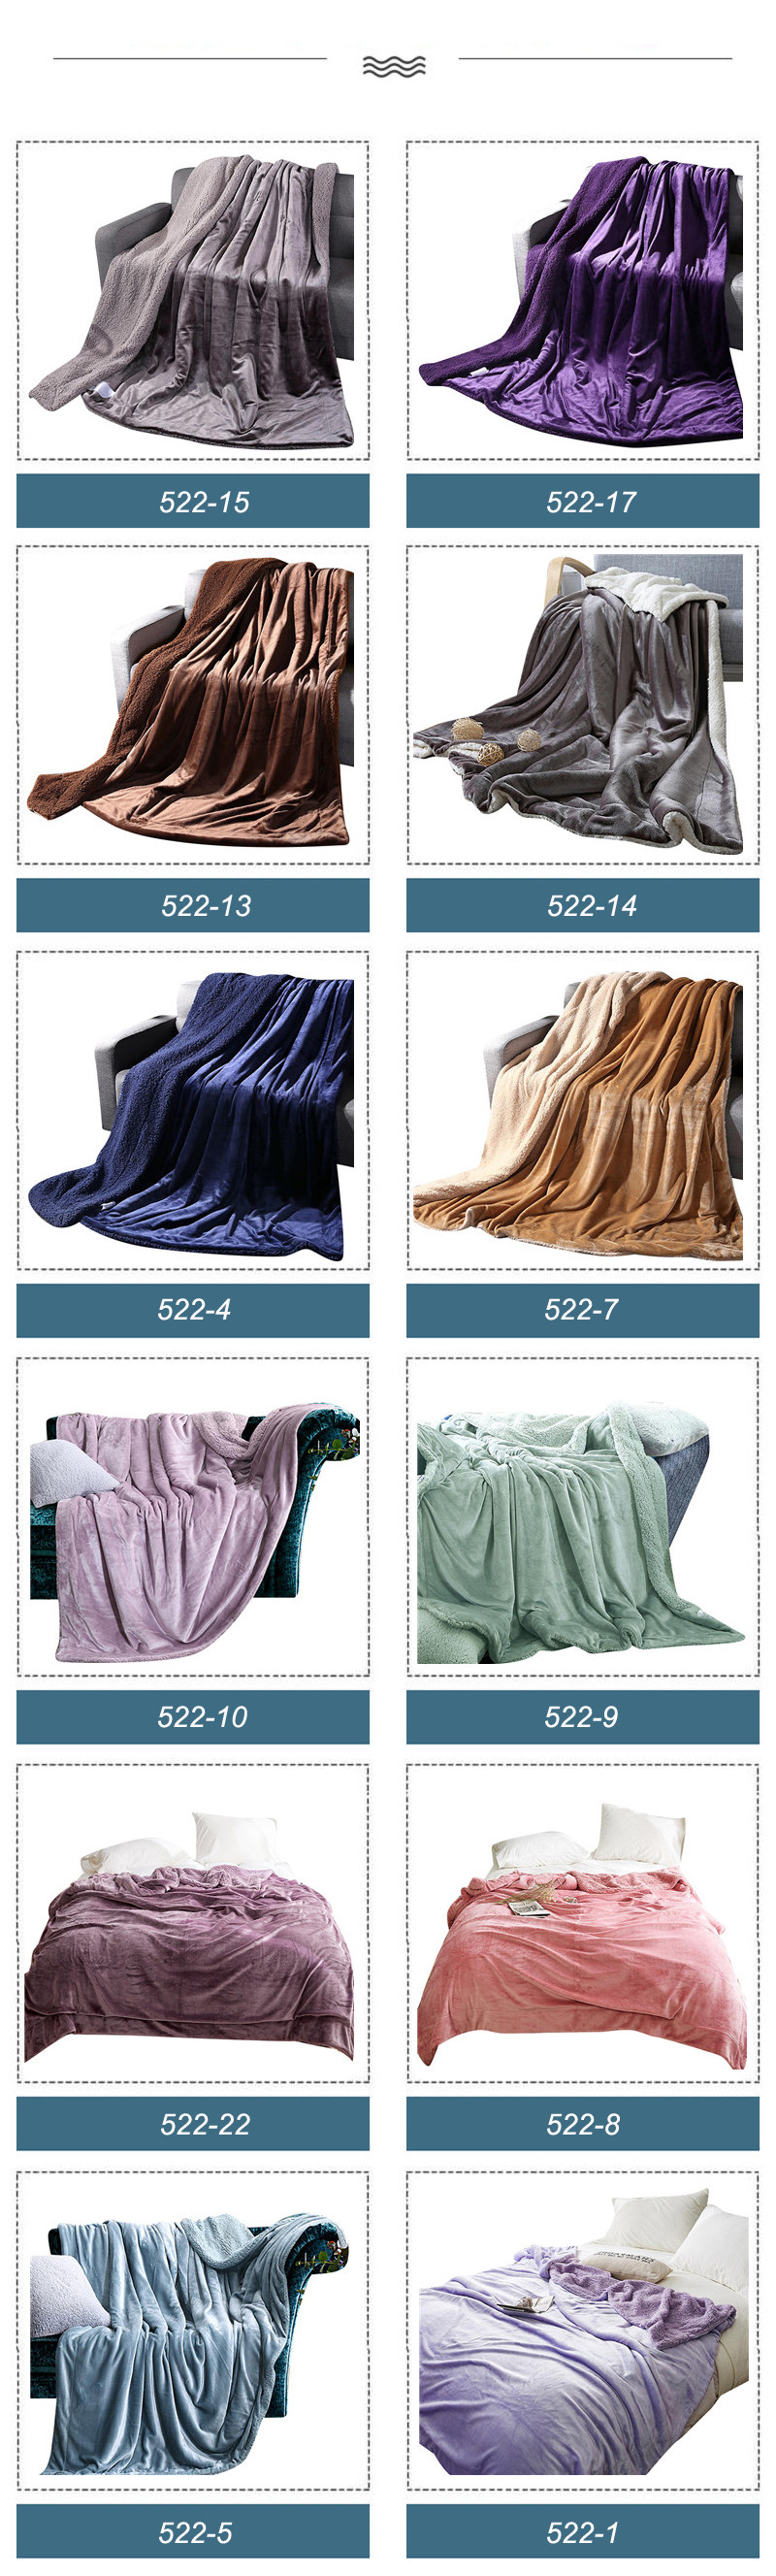 Single Size Fleece Bedding Blanket